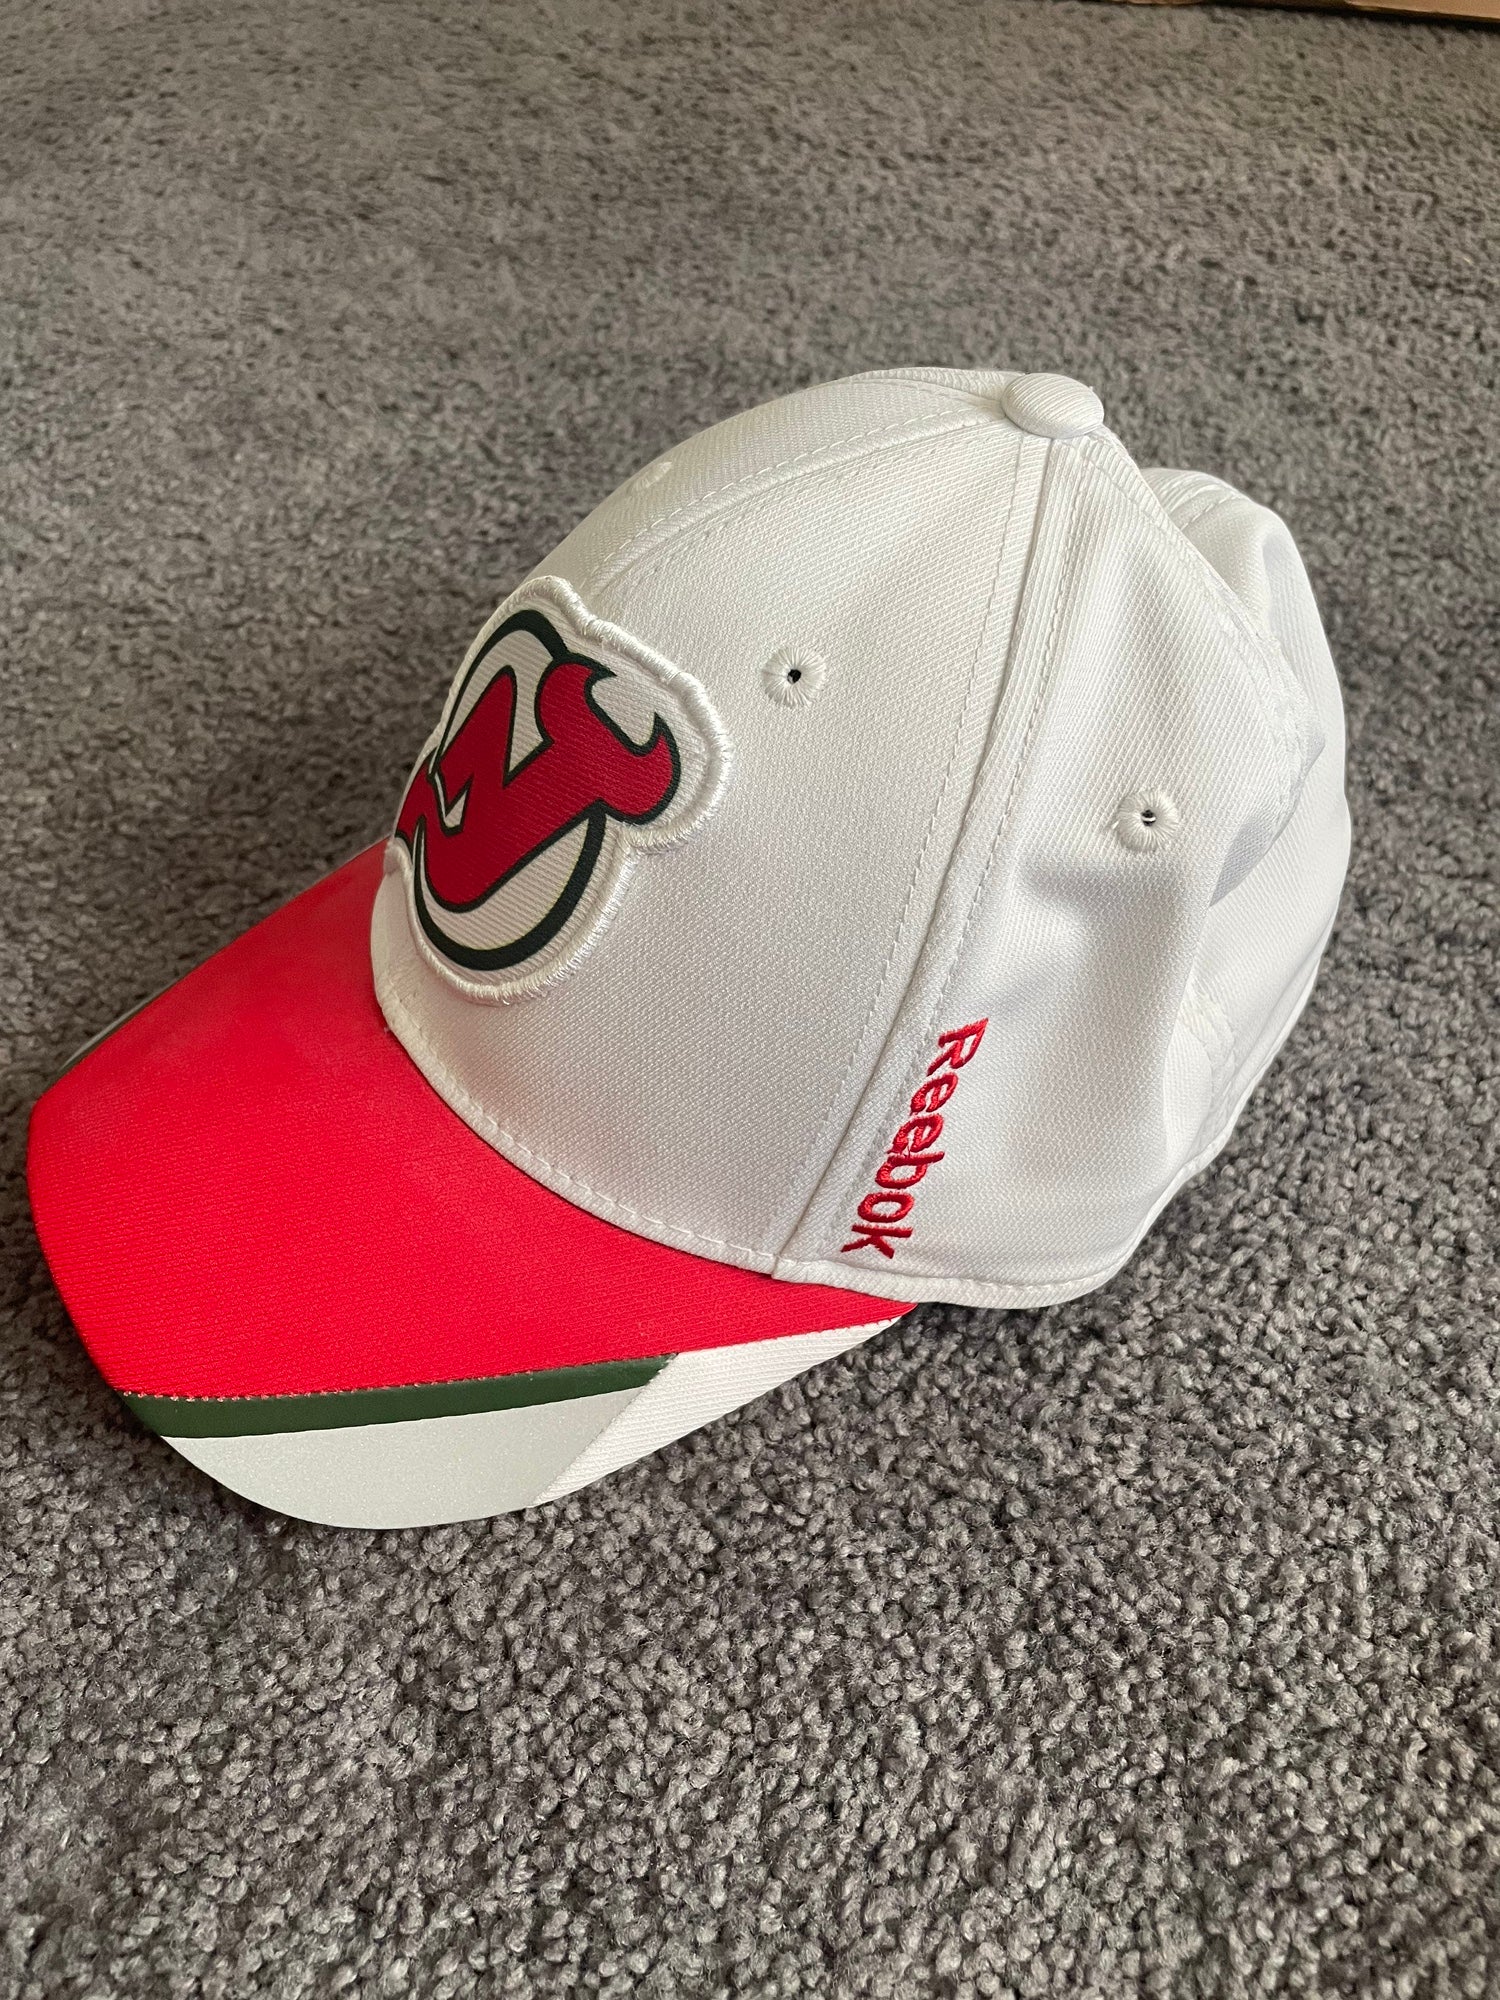 New Jersey Devils Adult Flex Fit Hat by Reebok